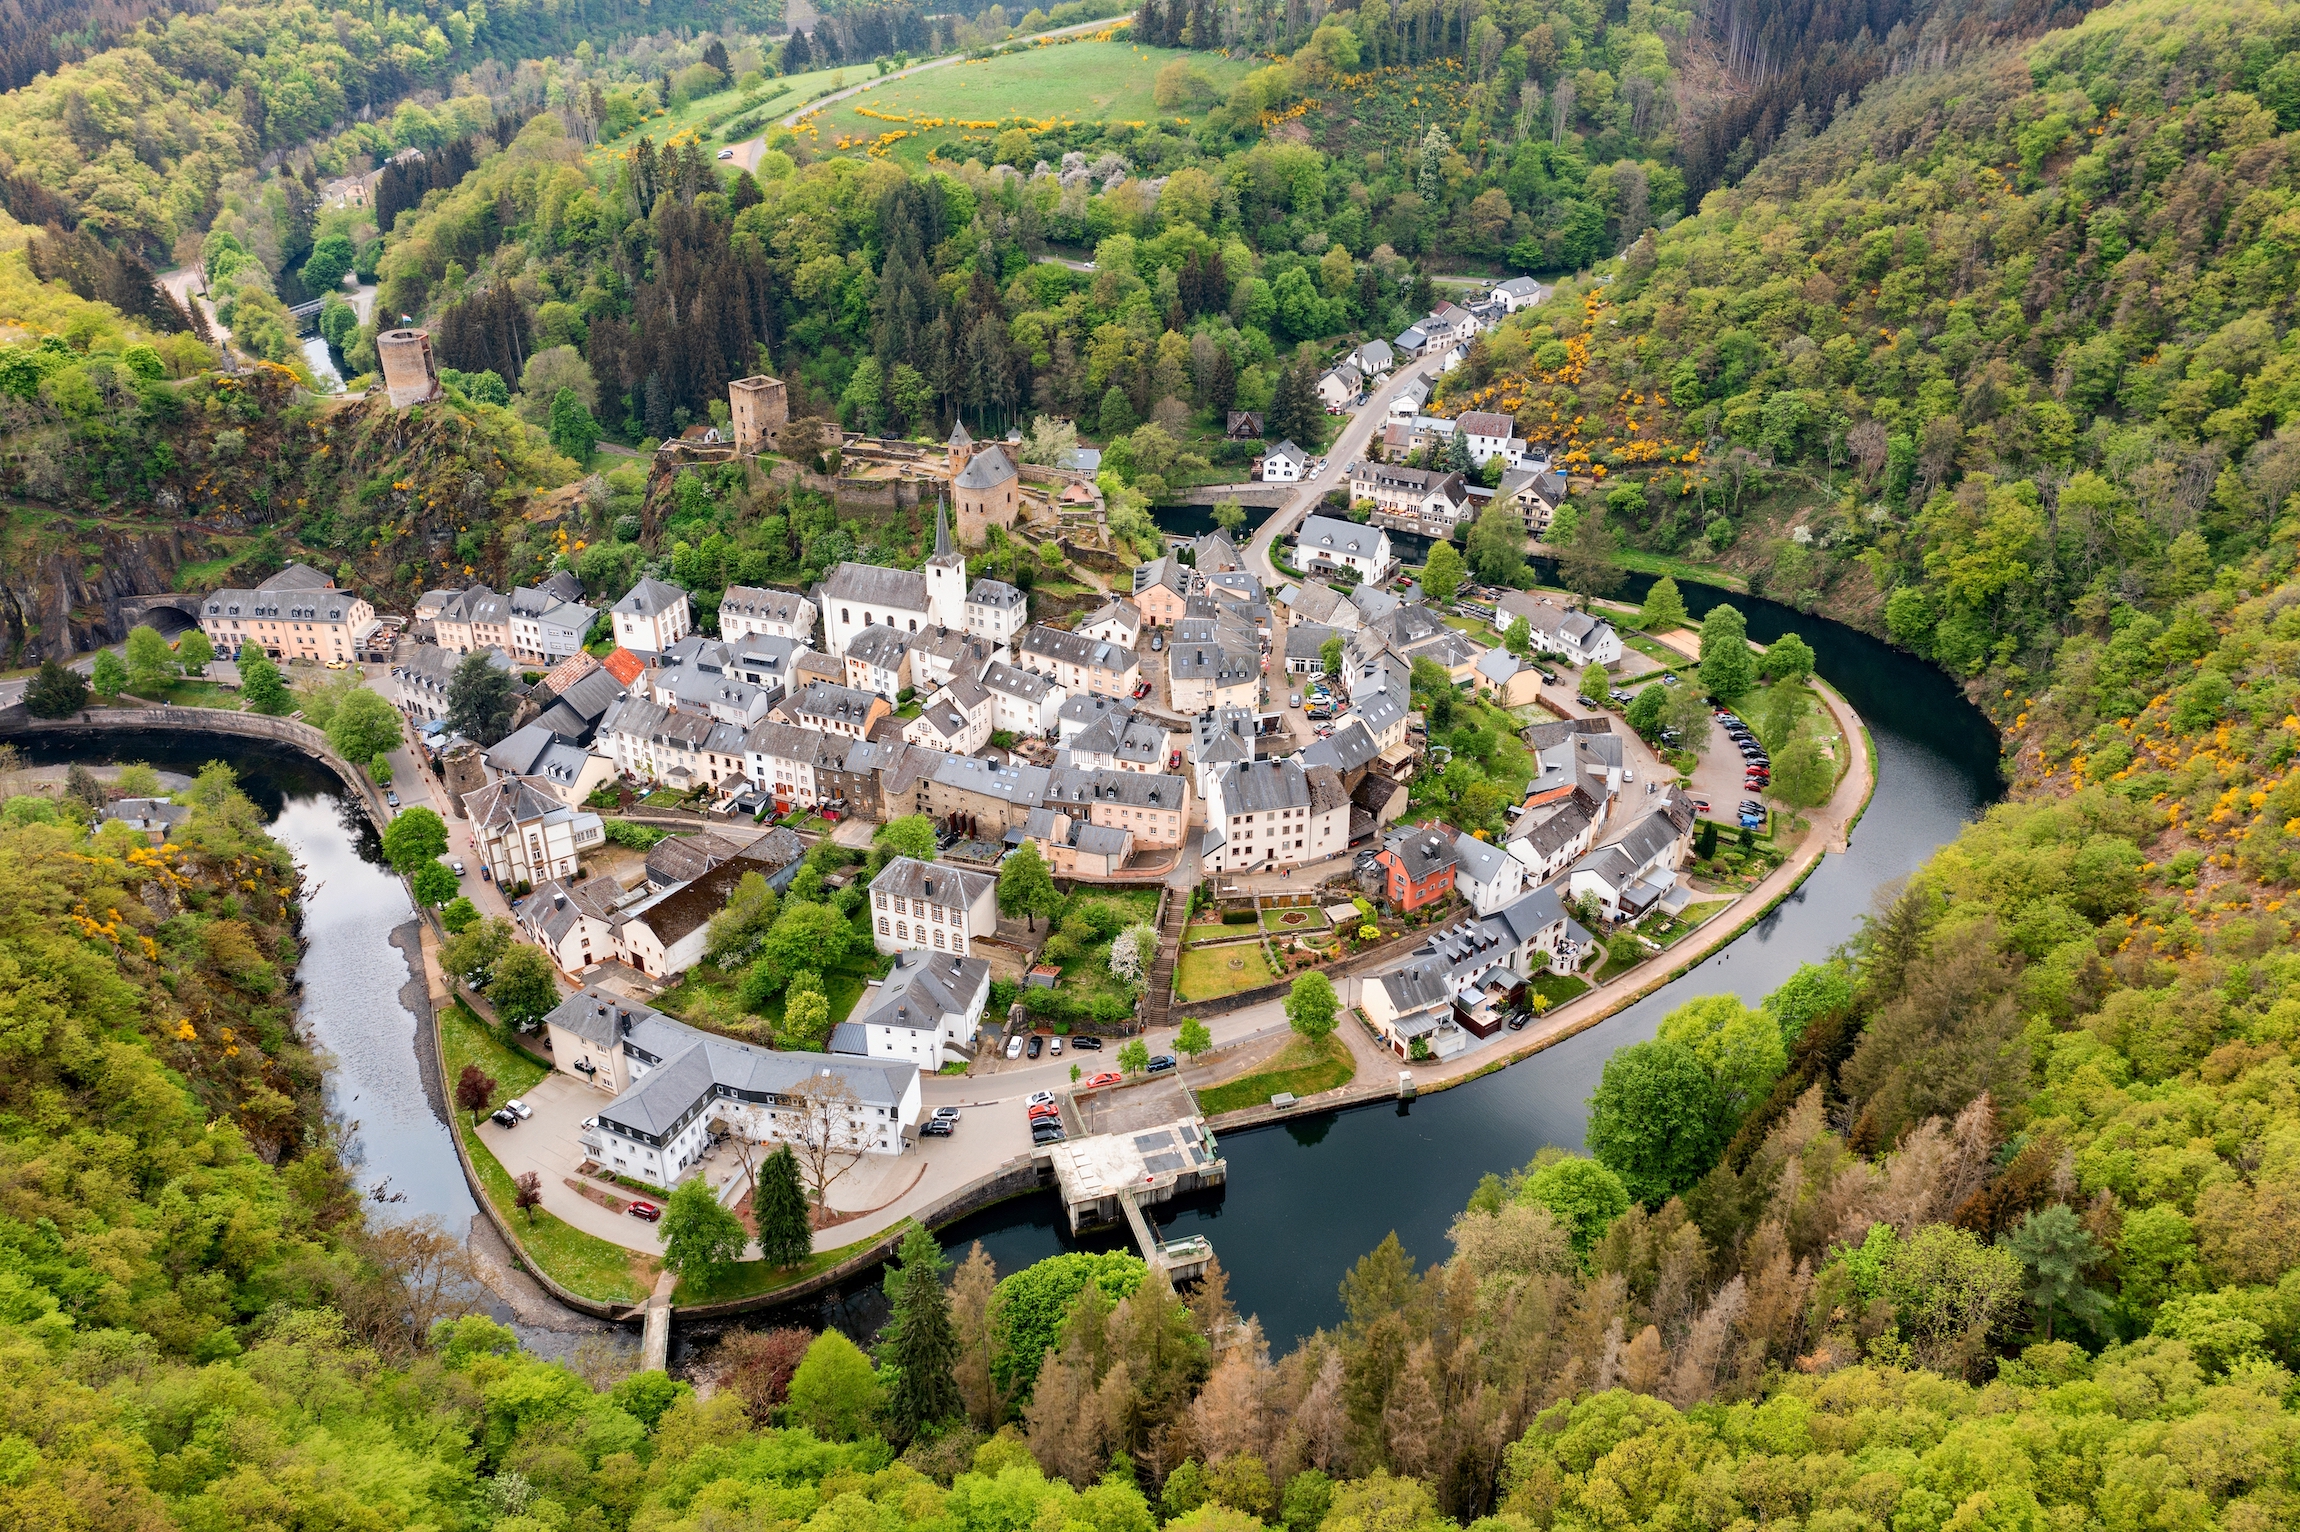 Widok z lotu ptaka na Esch-sur-Sure, średniowieczne miasto w Luksemburgu, zdominowane przez zamek, kanton Wiltz w Diekirch. Lasy Parku Przyrody Upper-Sure, meander krętej rzeki Sauer, w pobliżu jeziora Upper Sauer.